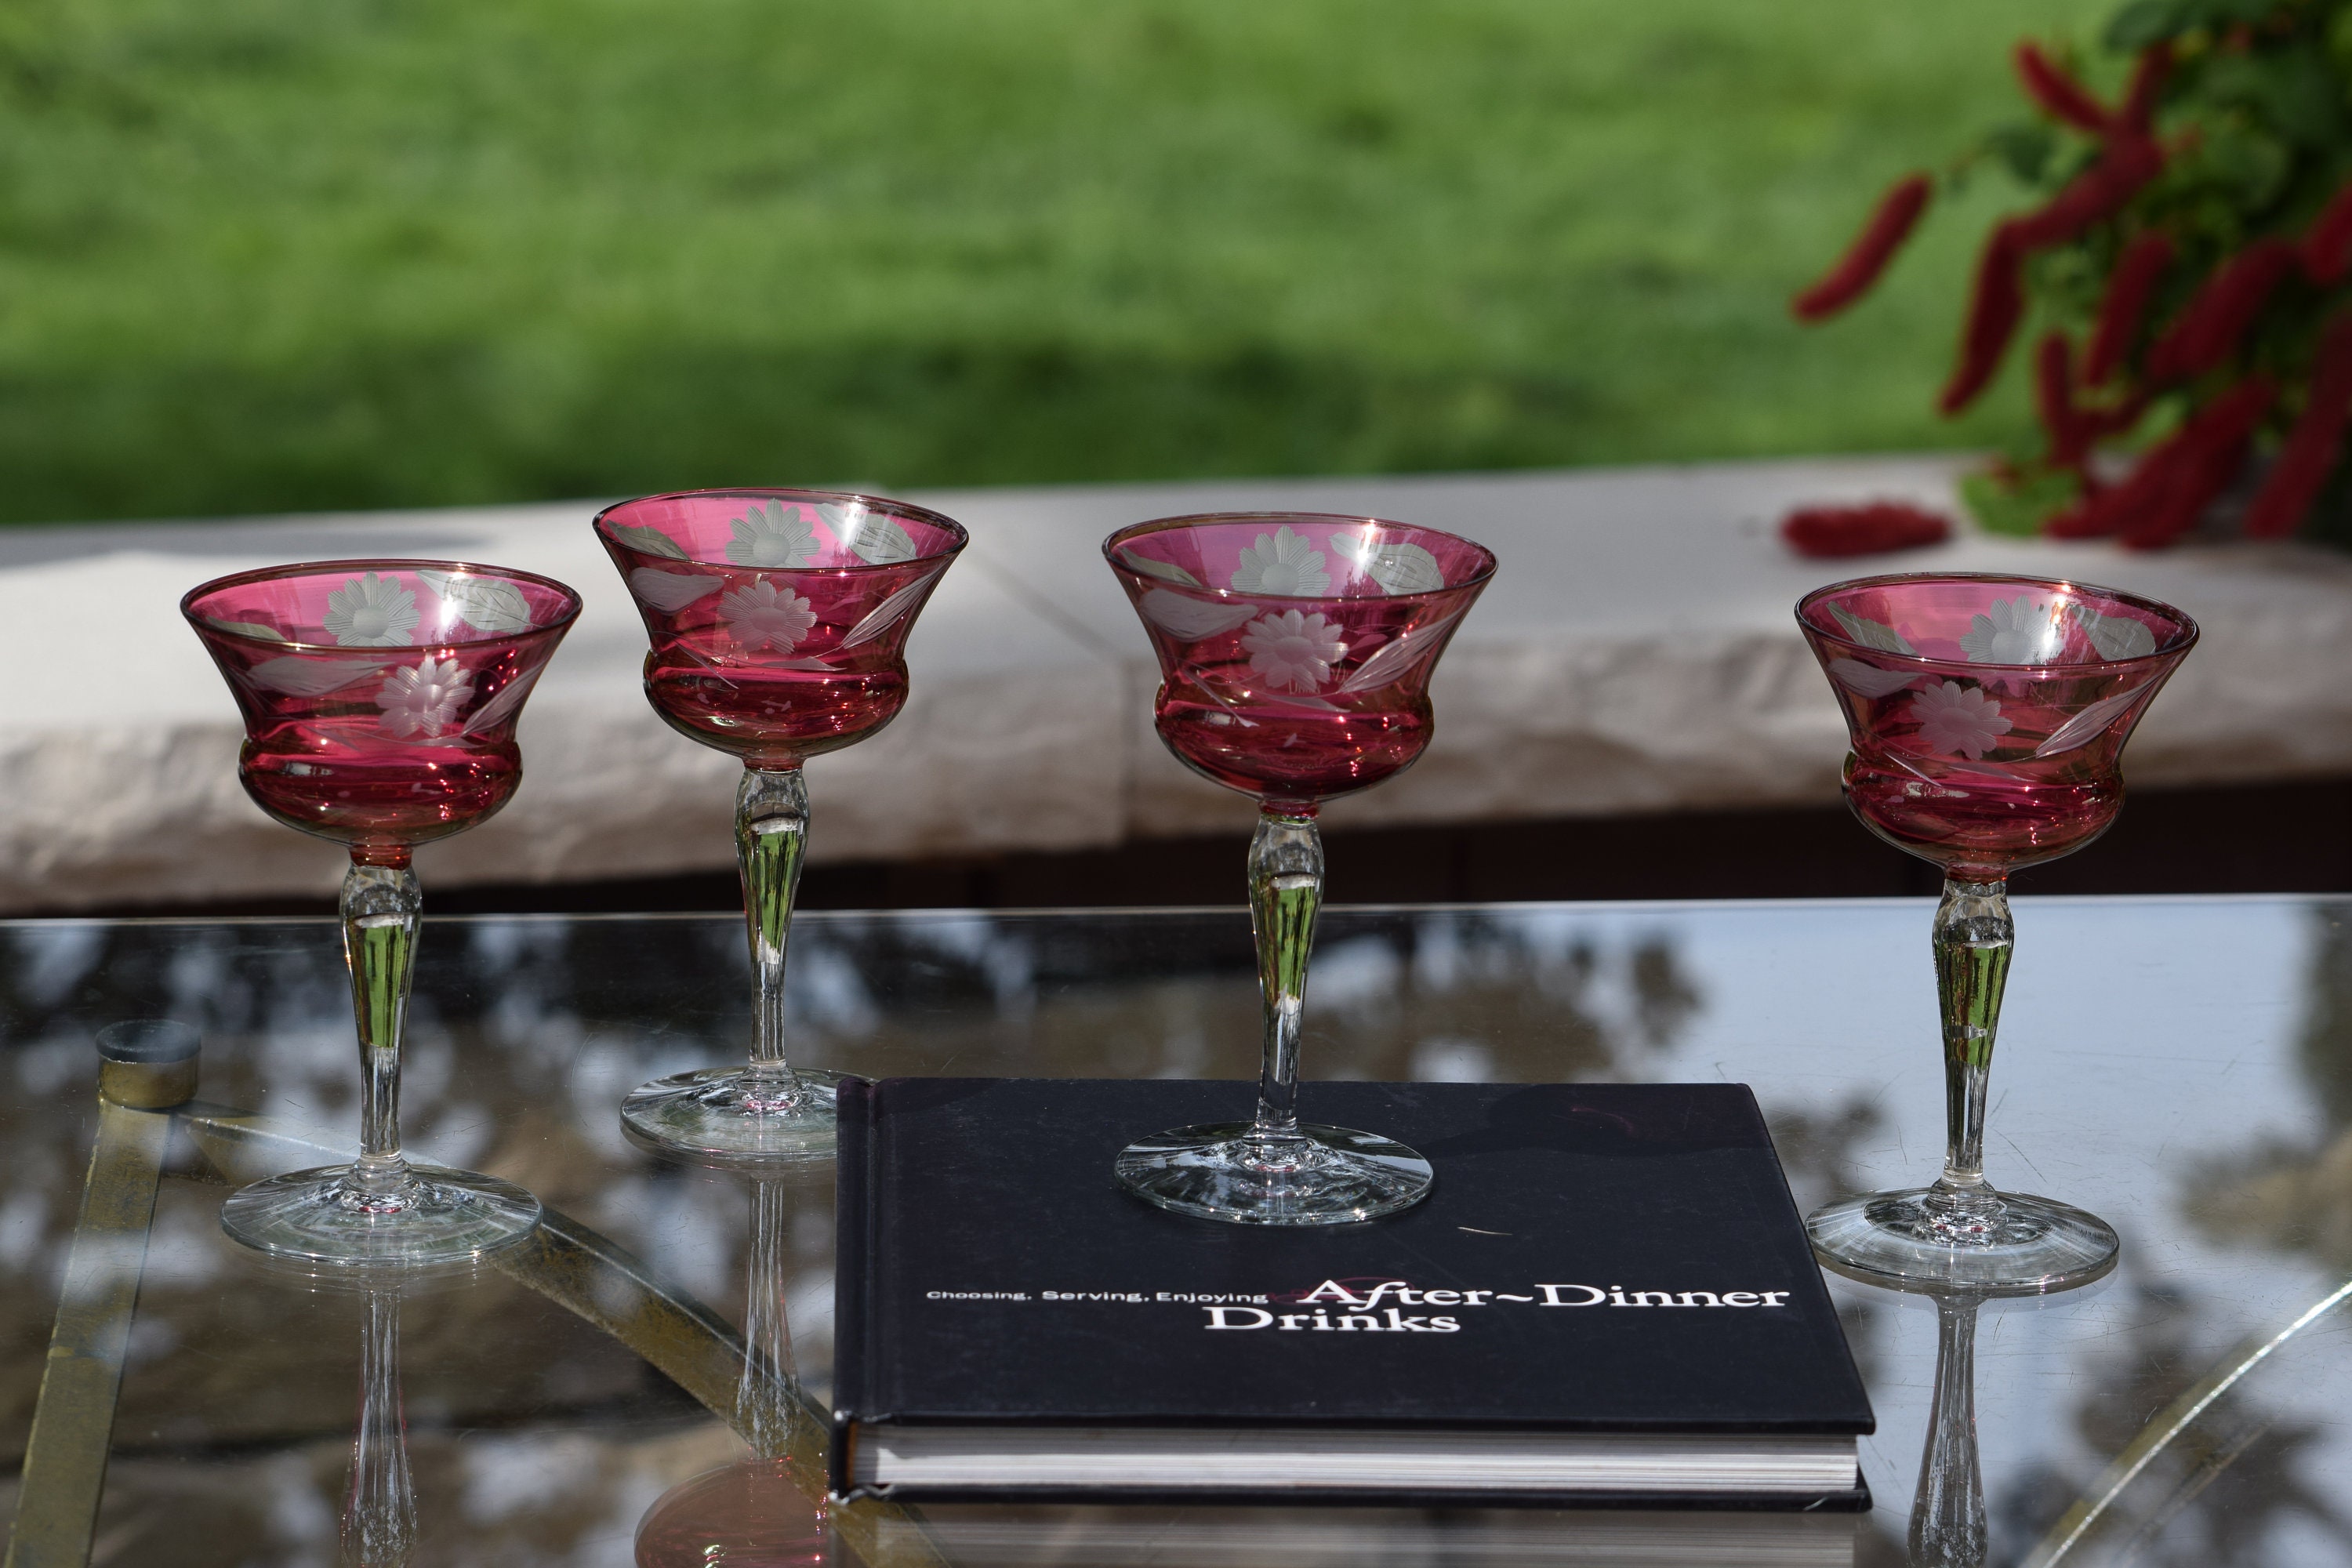 Vintage Red Wine Glasses, Set of 4, Vintage Red Etched Wine